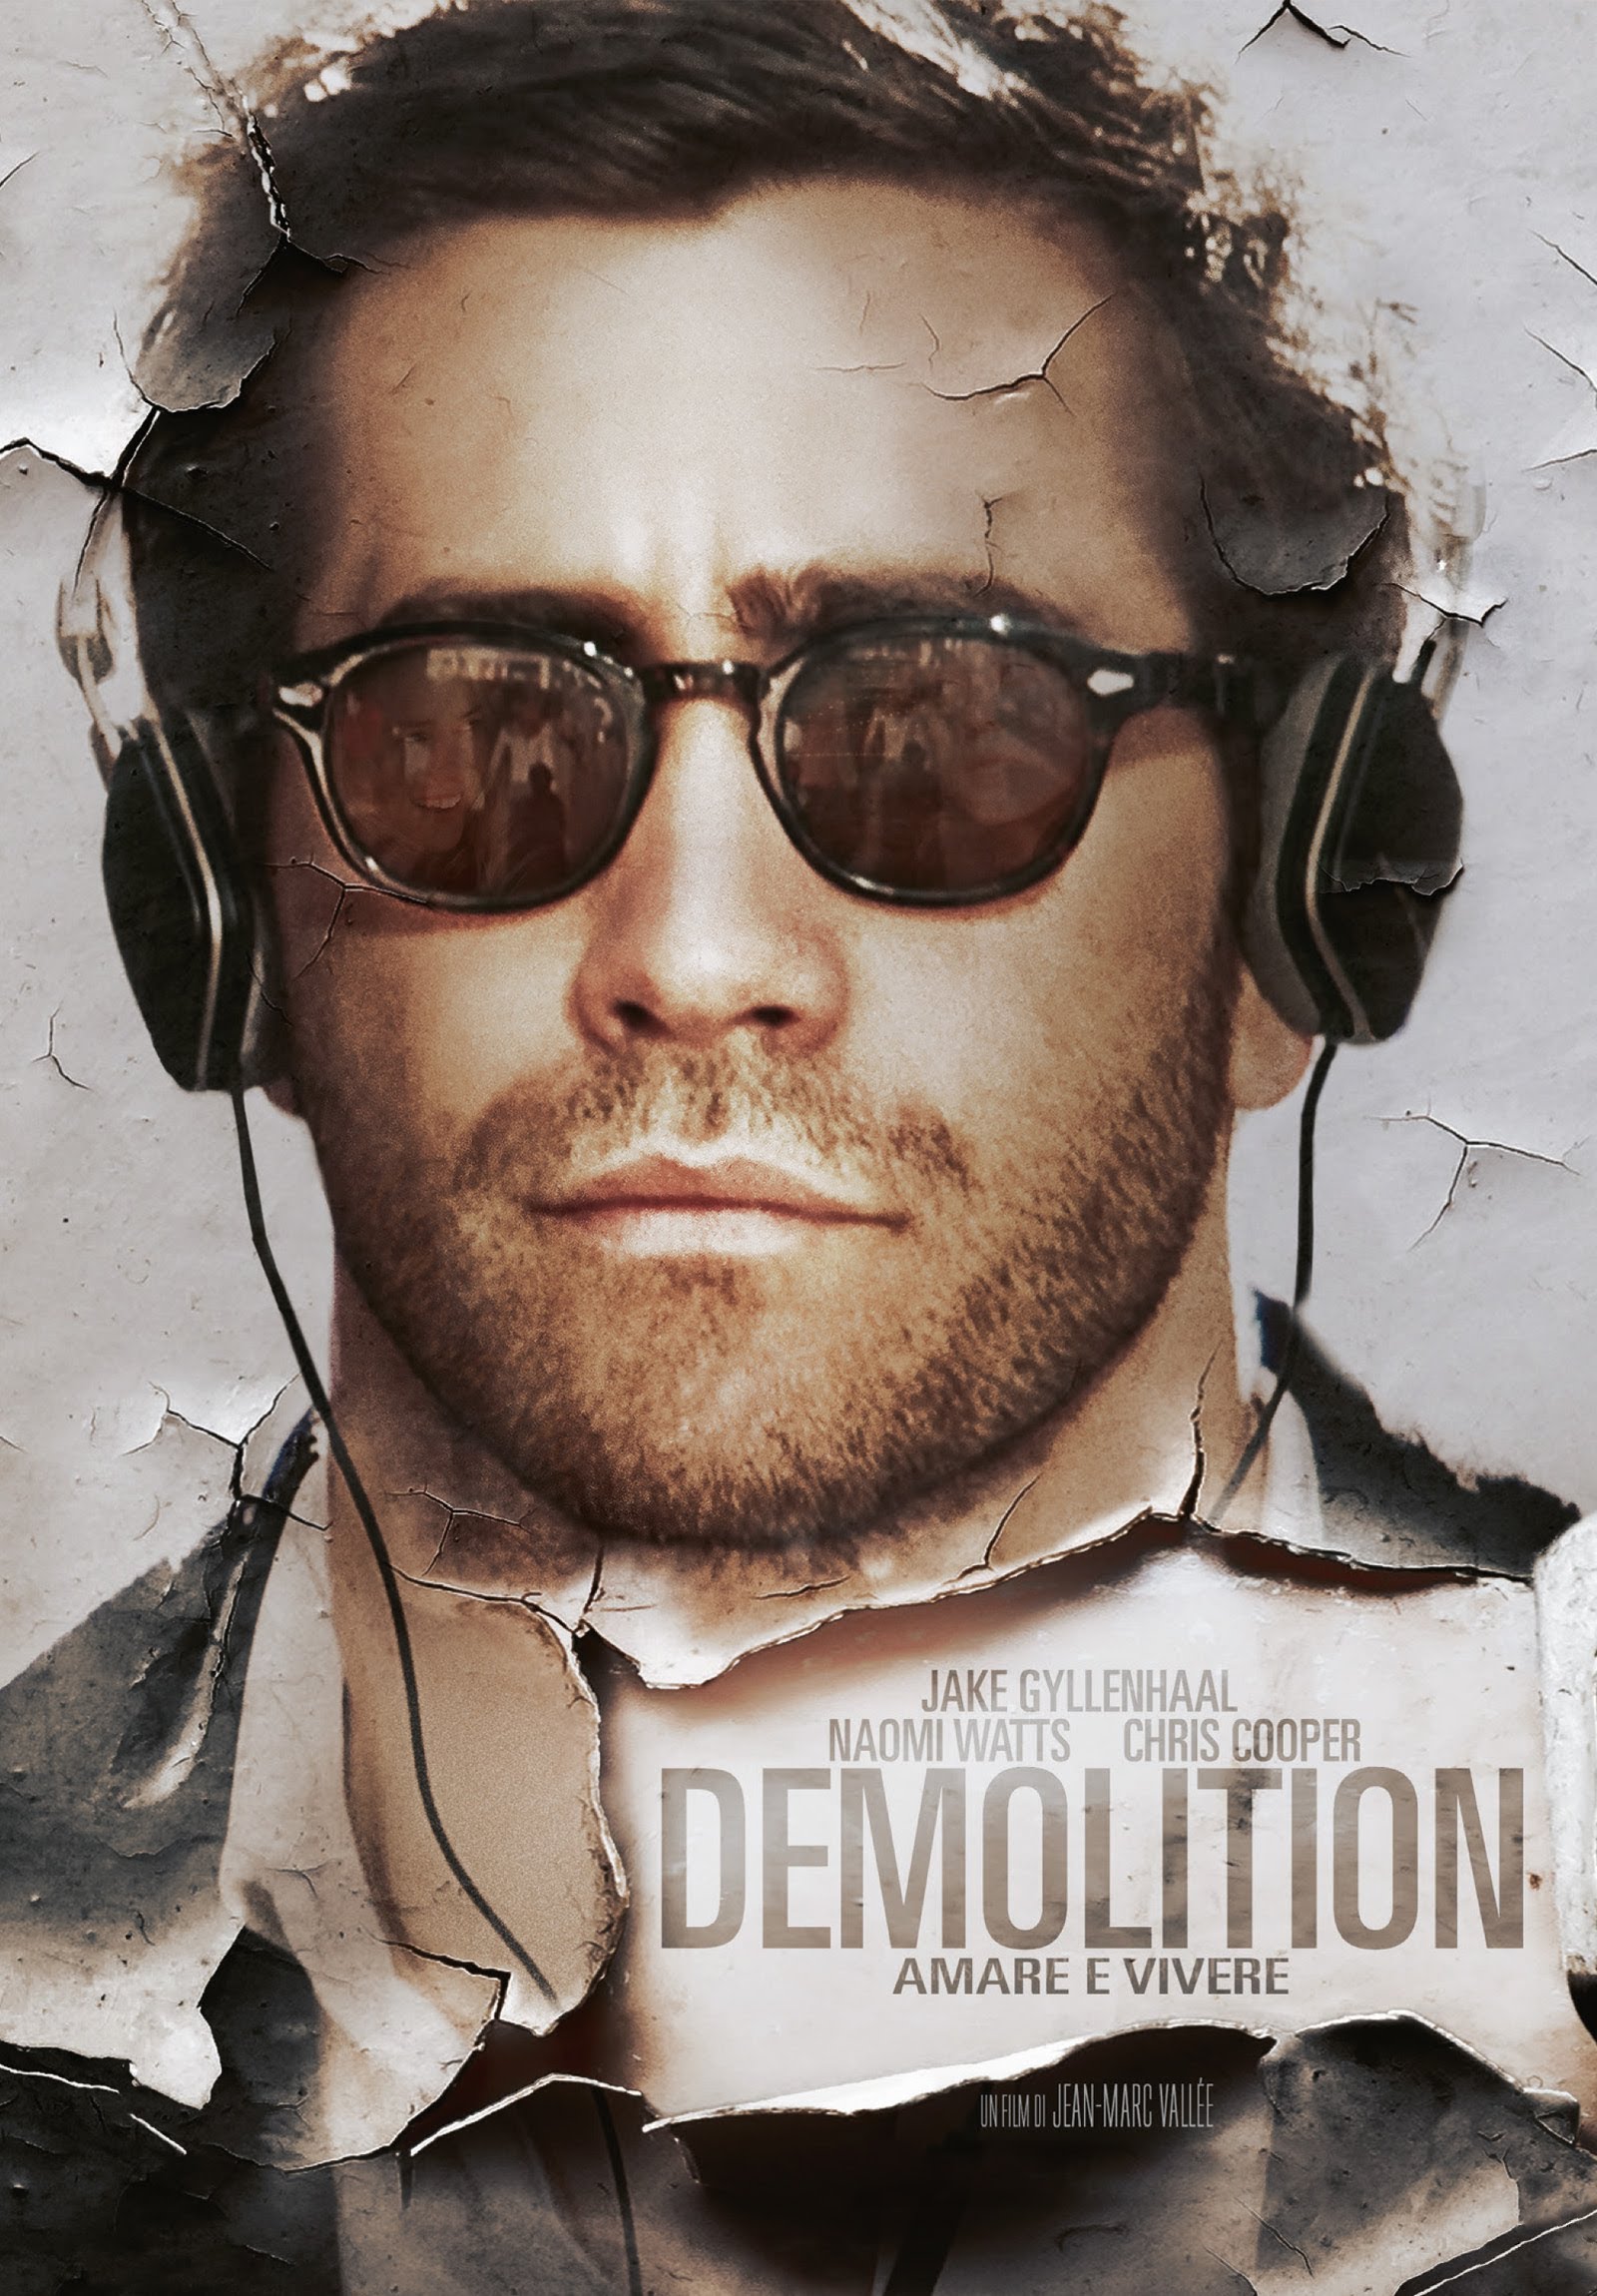 Demolition – Amare e vivere [HD] (2016)